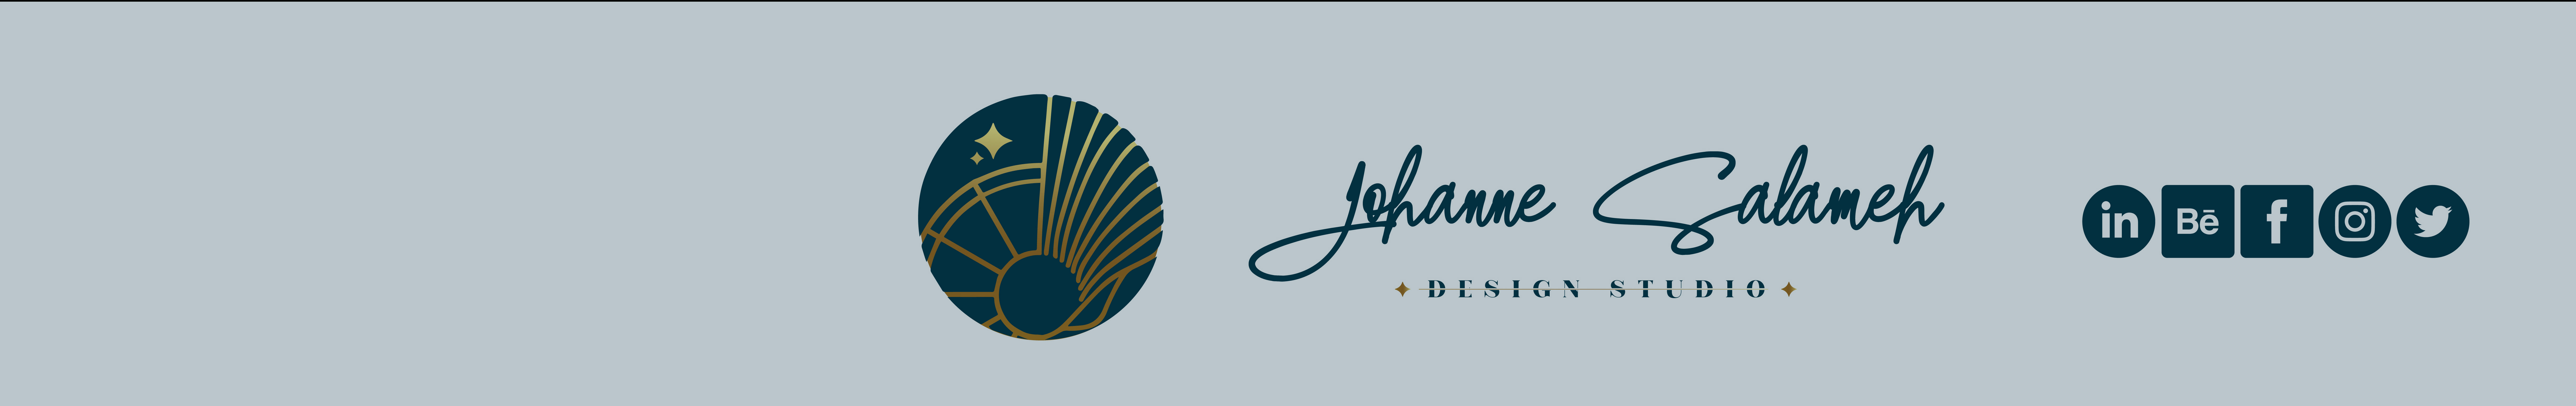 Profil-Banner von Johanne Salameh